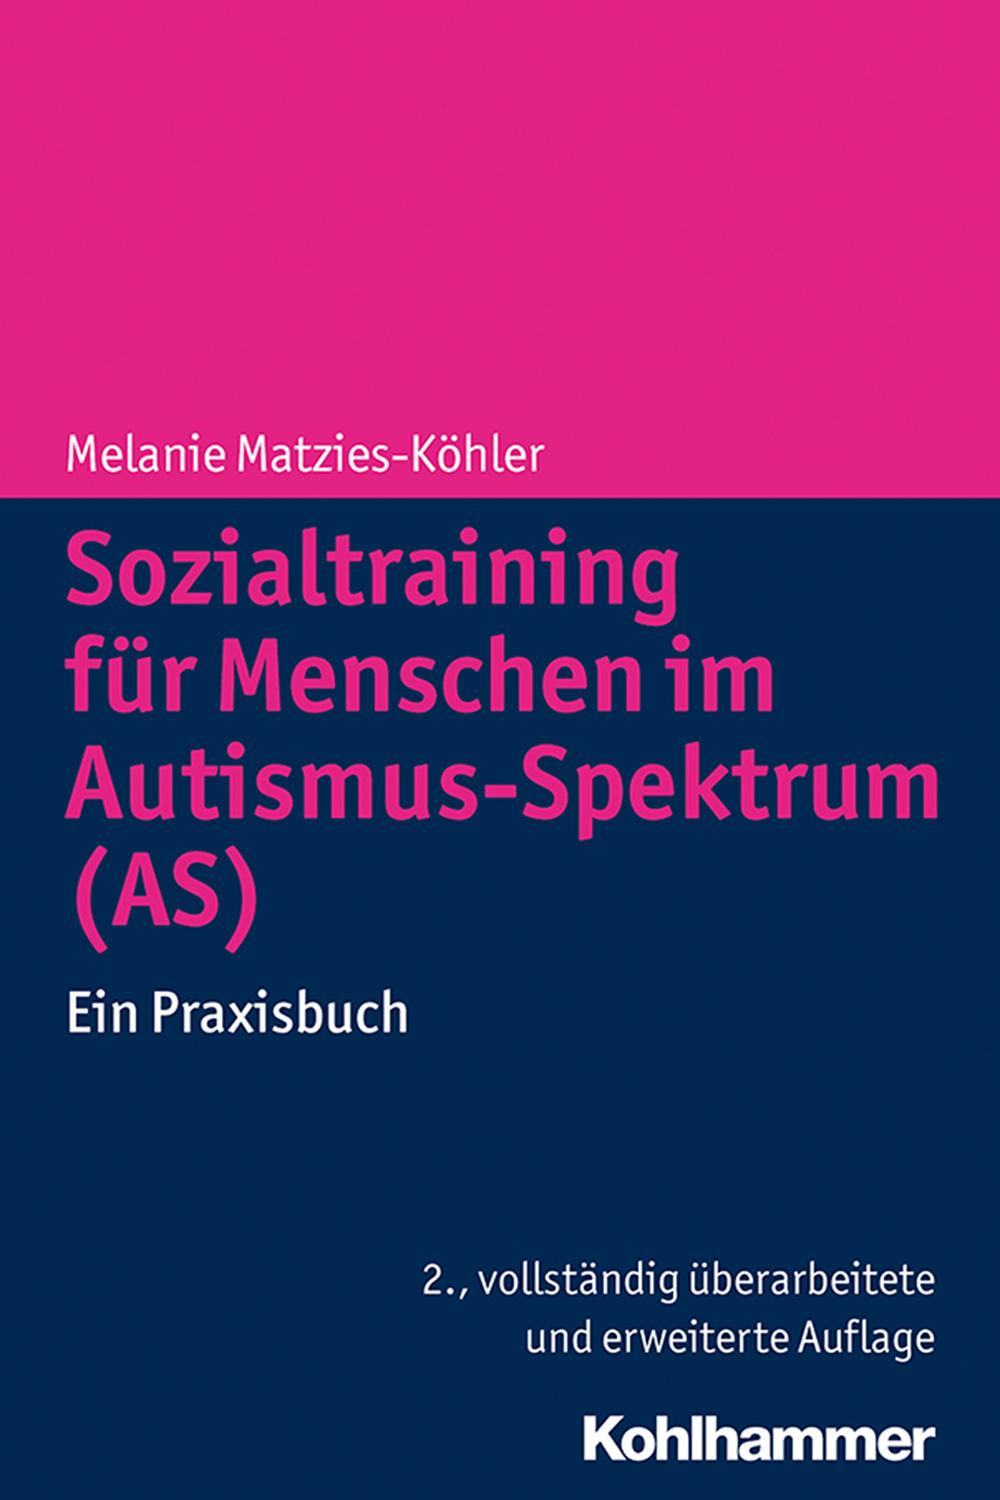 Sozialtraining für Menschen im Autismus-Spektrum (AS) - Melanie Matzies-Köhler